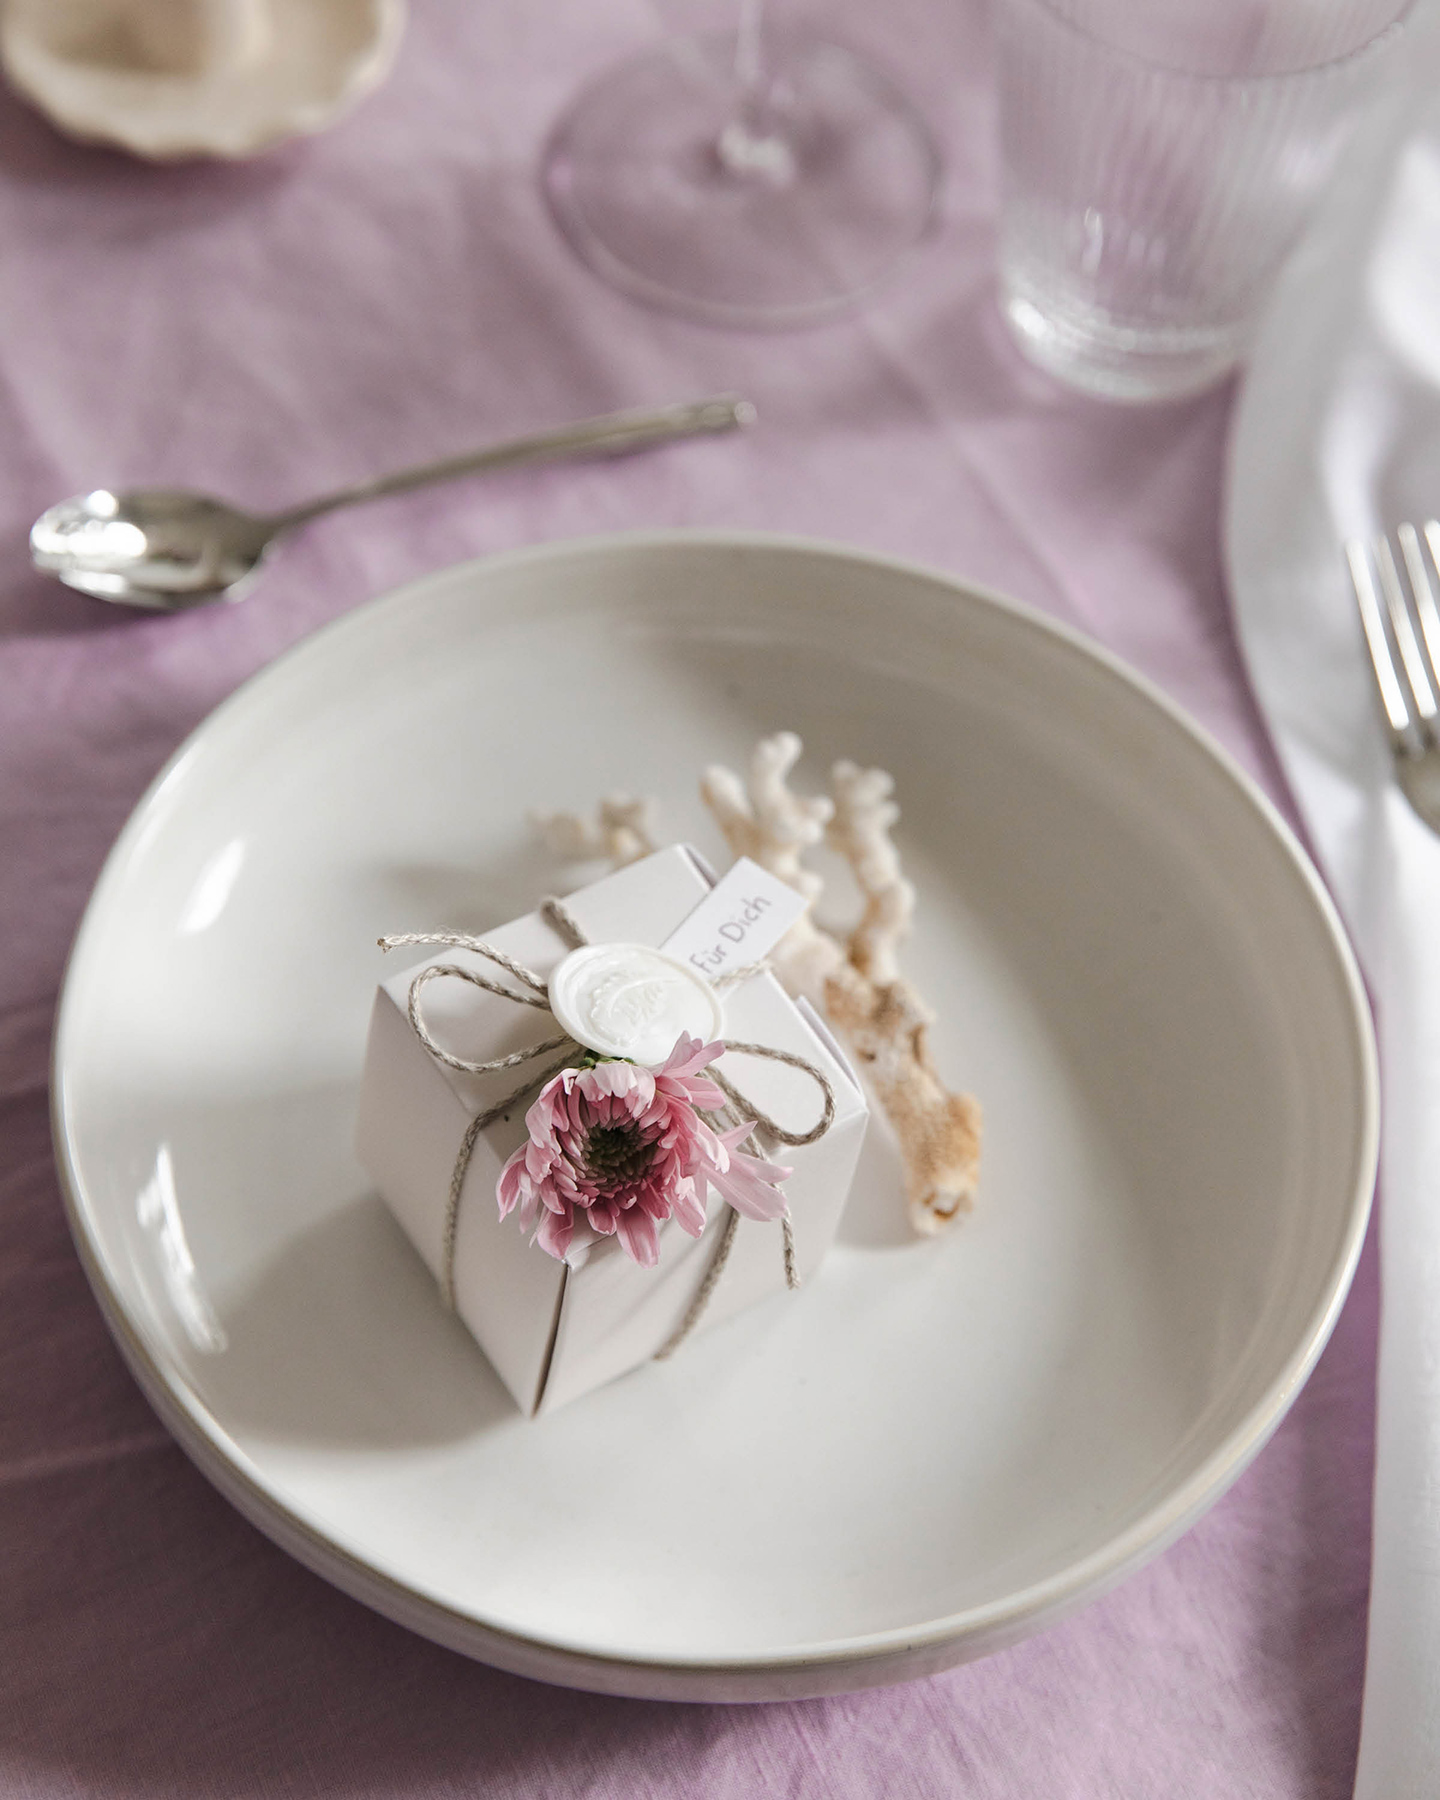 Geschenkbox mit Macaron liegt auf dem Teller einer gedeckten Hochzeitstafel. Gastgeschenke Hochzeit selber machen.